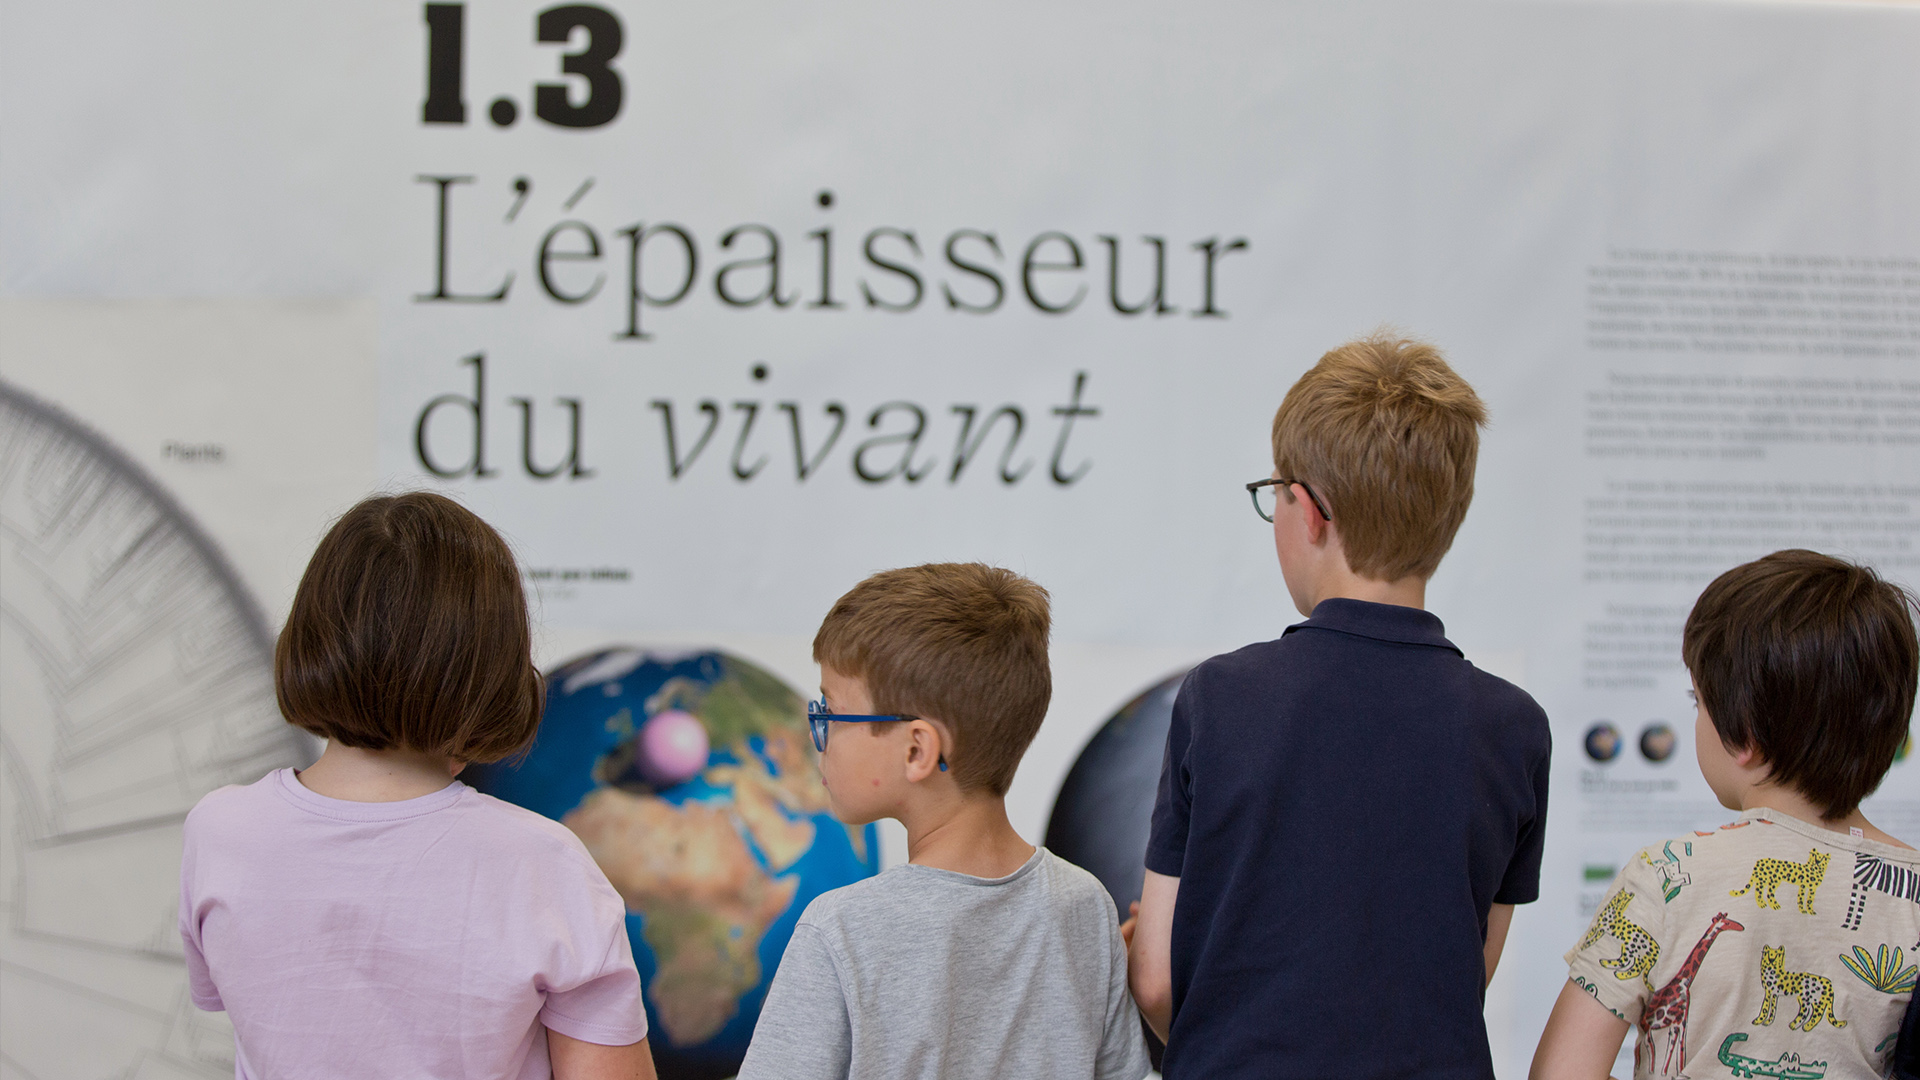 Un groupe de jeunes enfants qui regardent une infographie sur un mur.